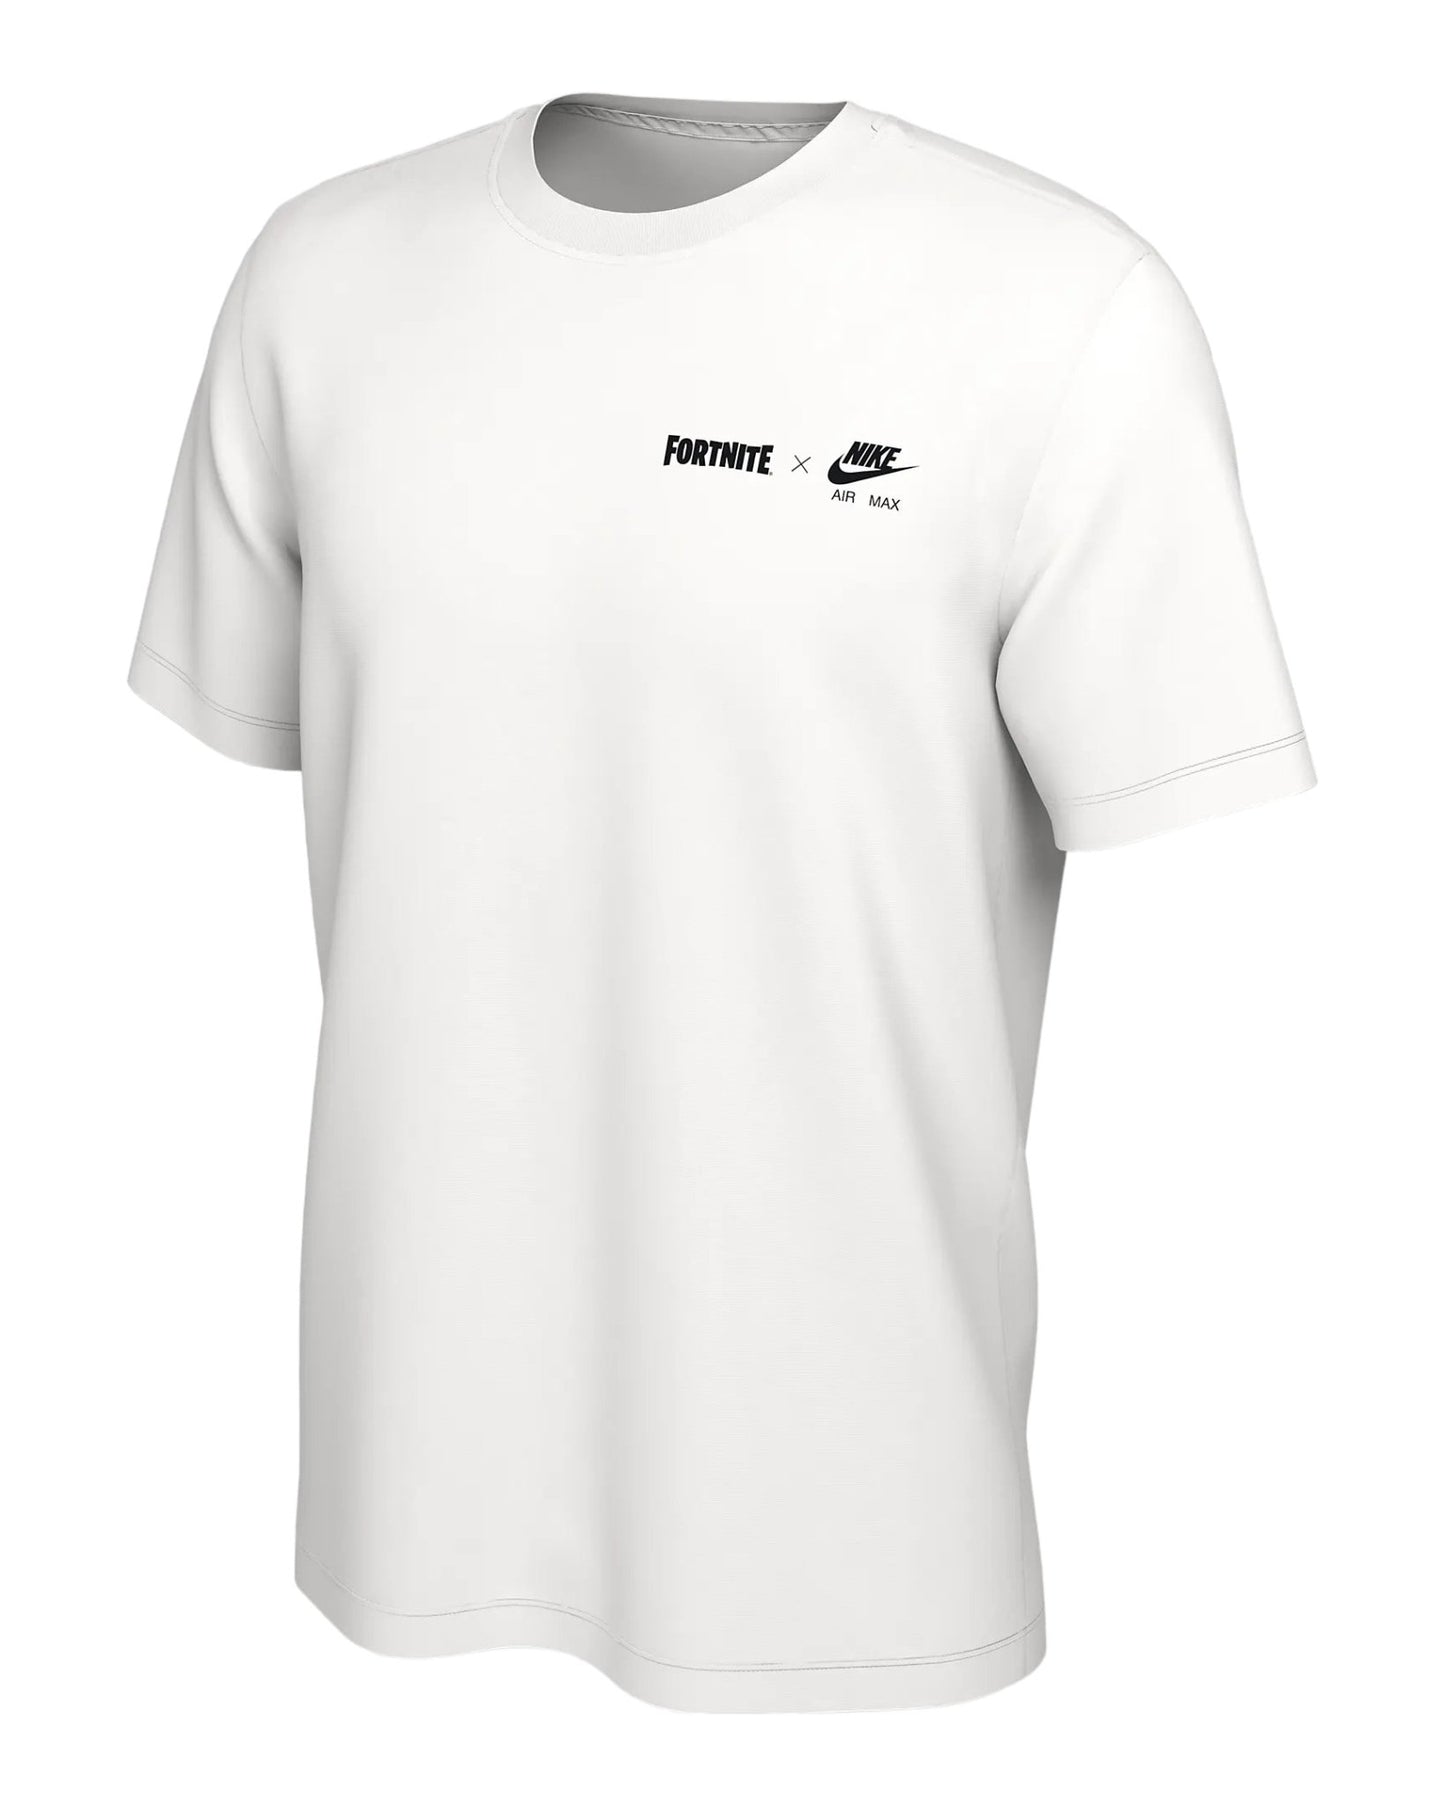 Fortnite x Nike Air Max Men's T-Shirt White - Supra Sneakers